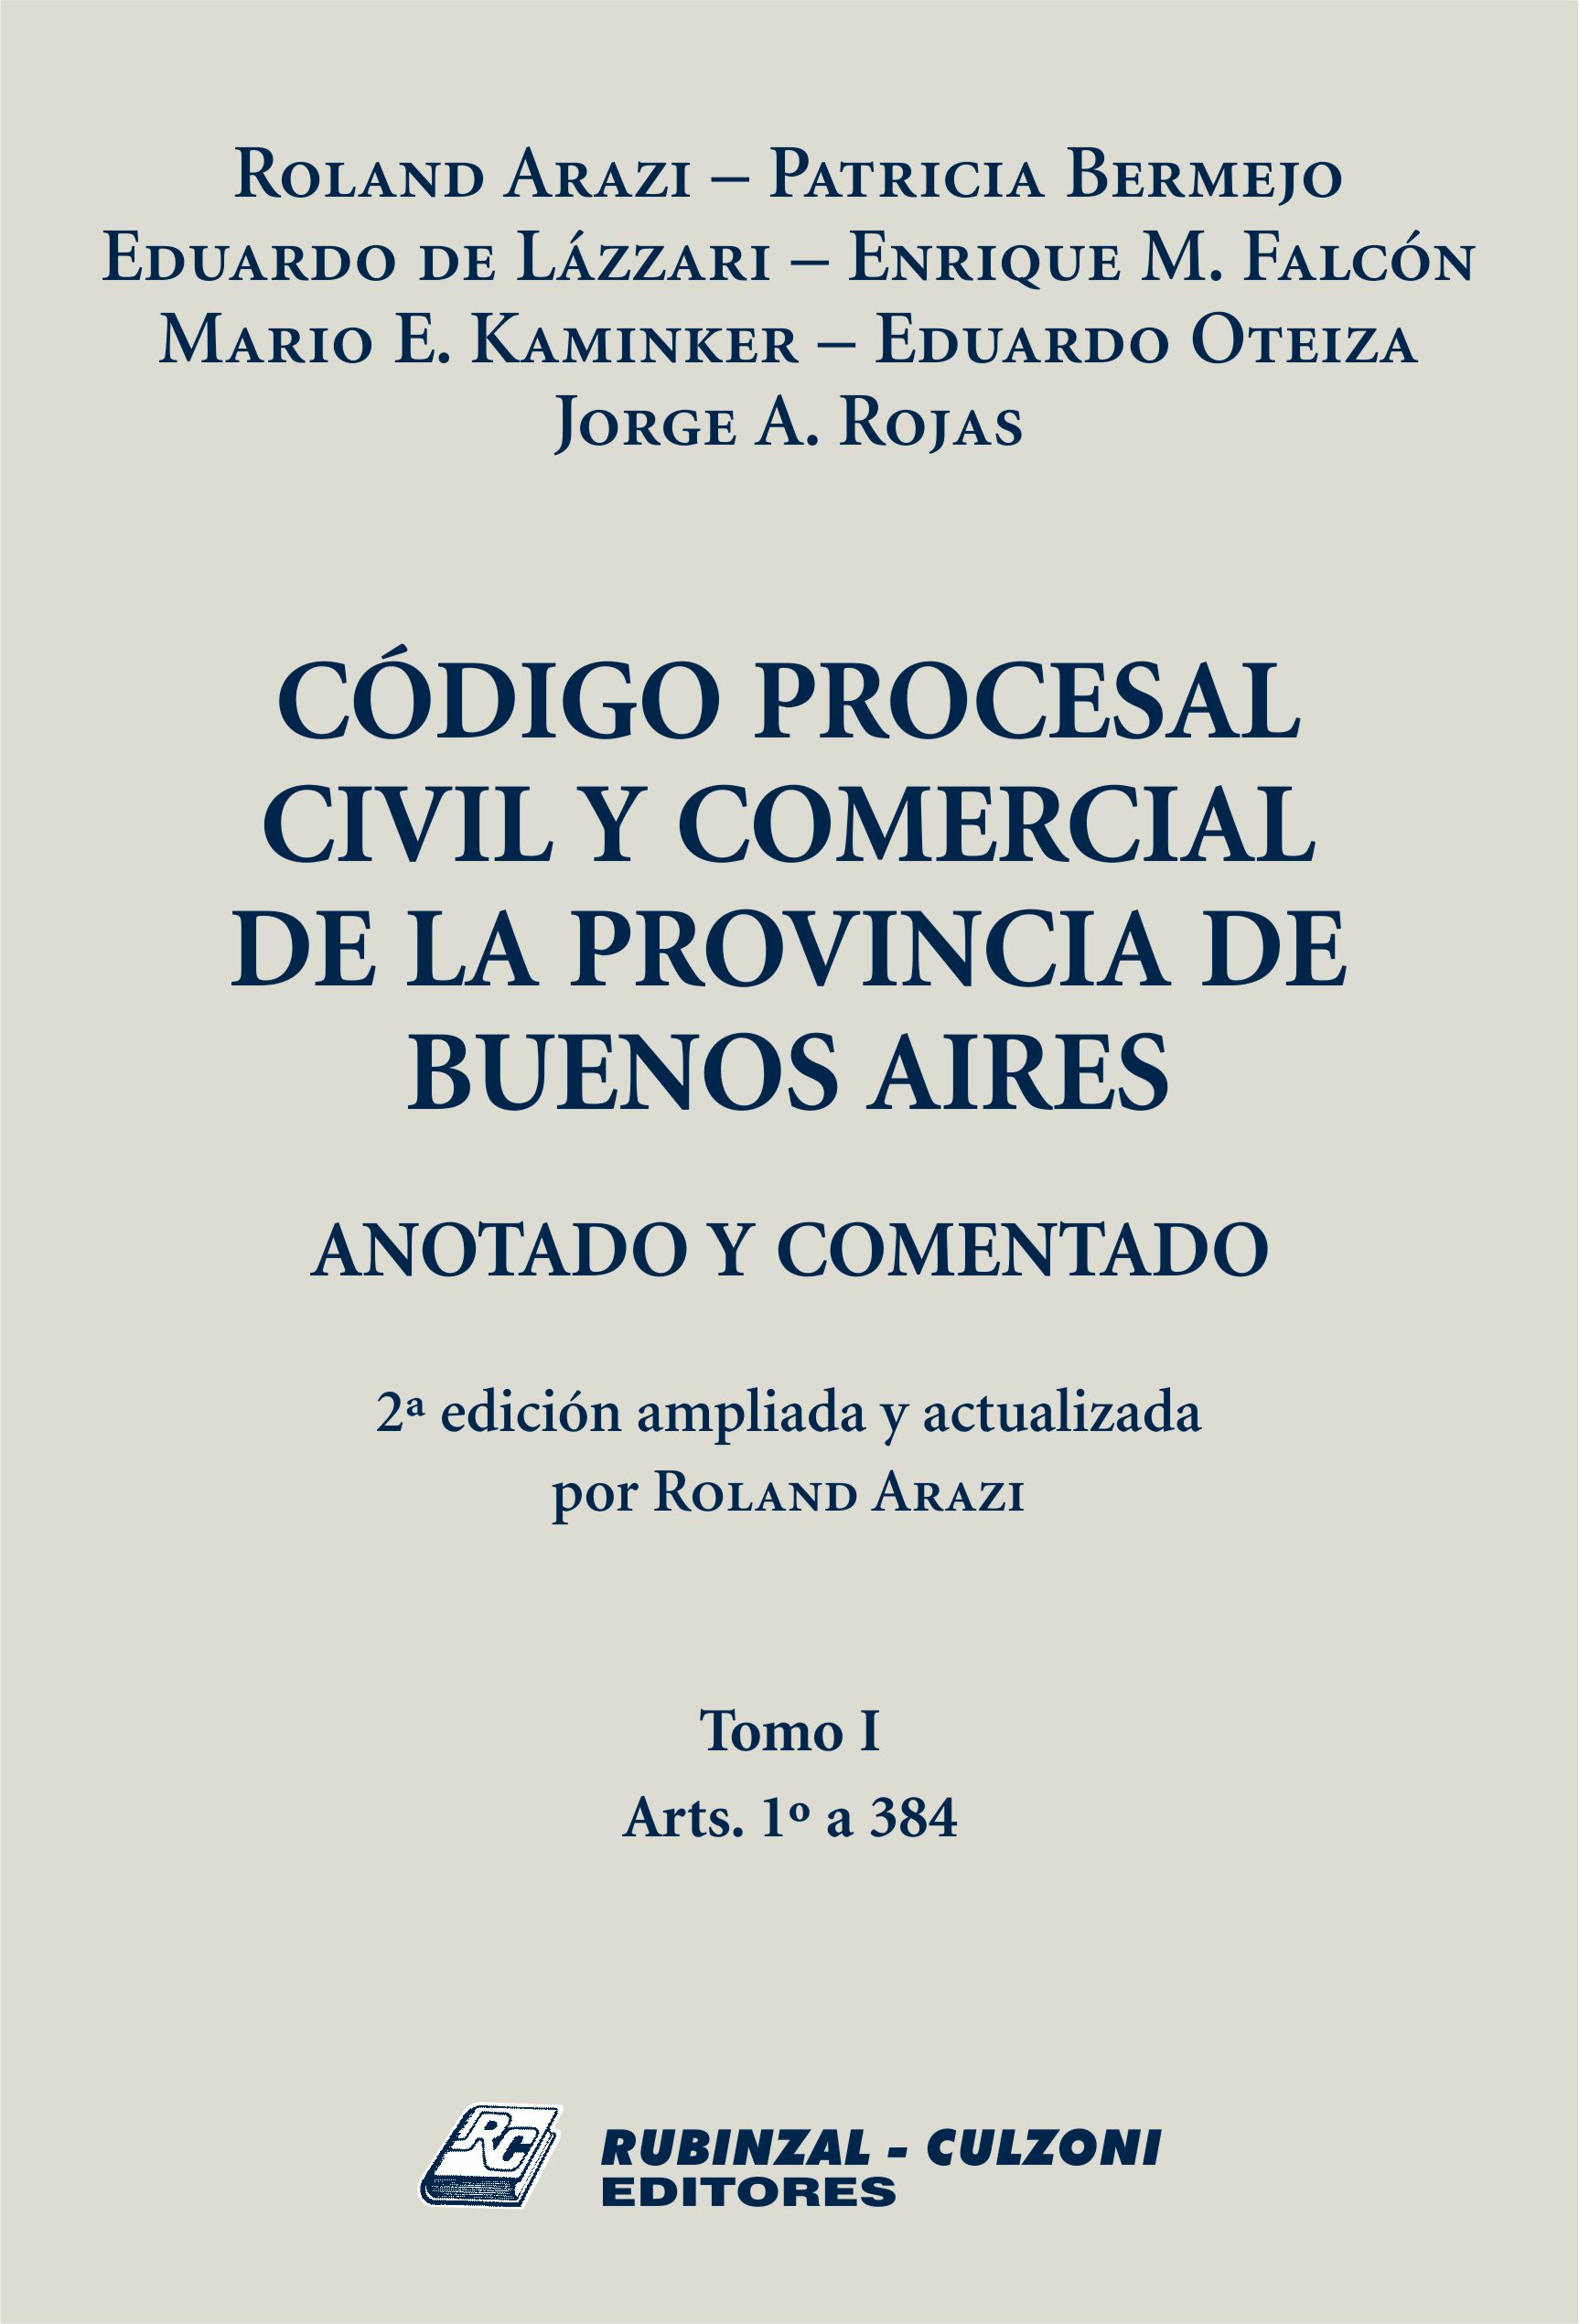 Código Procesal Civil y Comercial de la Provincia de Buenos Aires. Anotado y comentado. - Tomo I. 2ª Edición ampliada y actualizada por Roland Arazi.